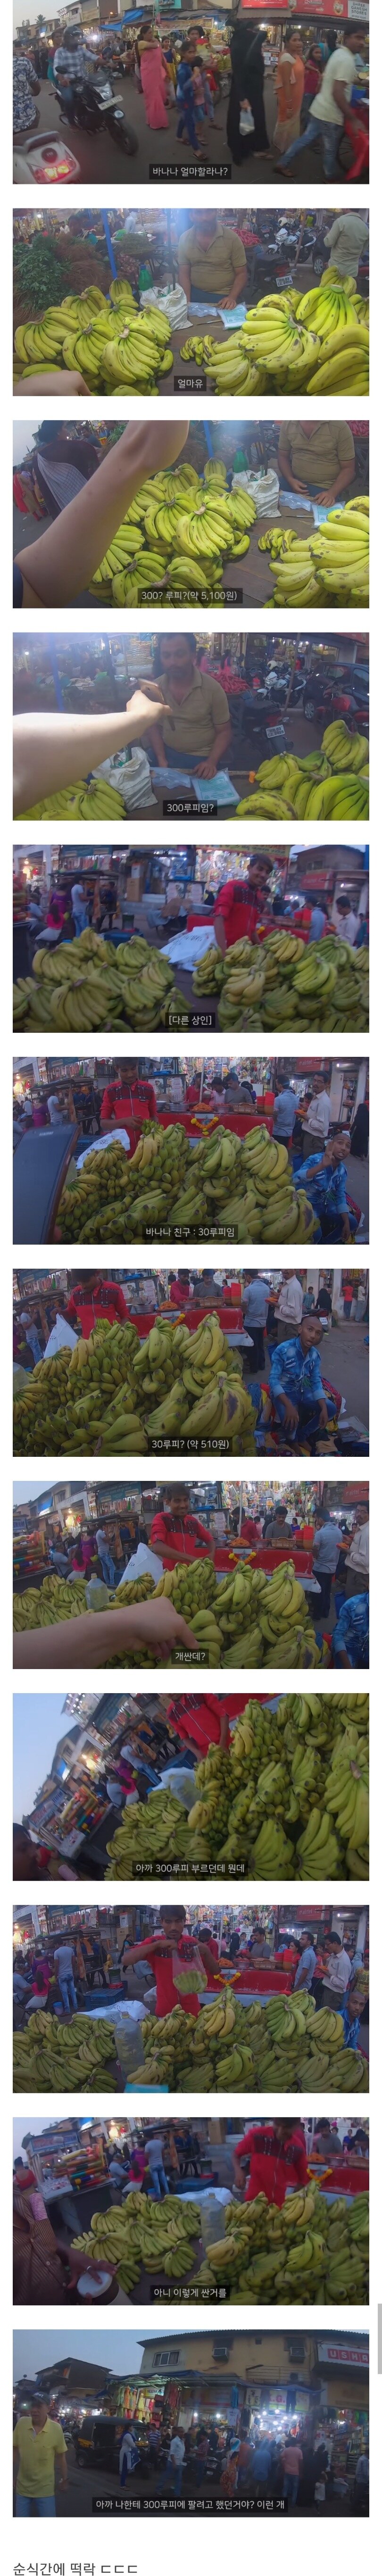 카레국의 바나나 가격